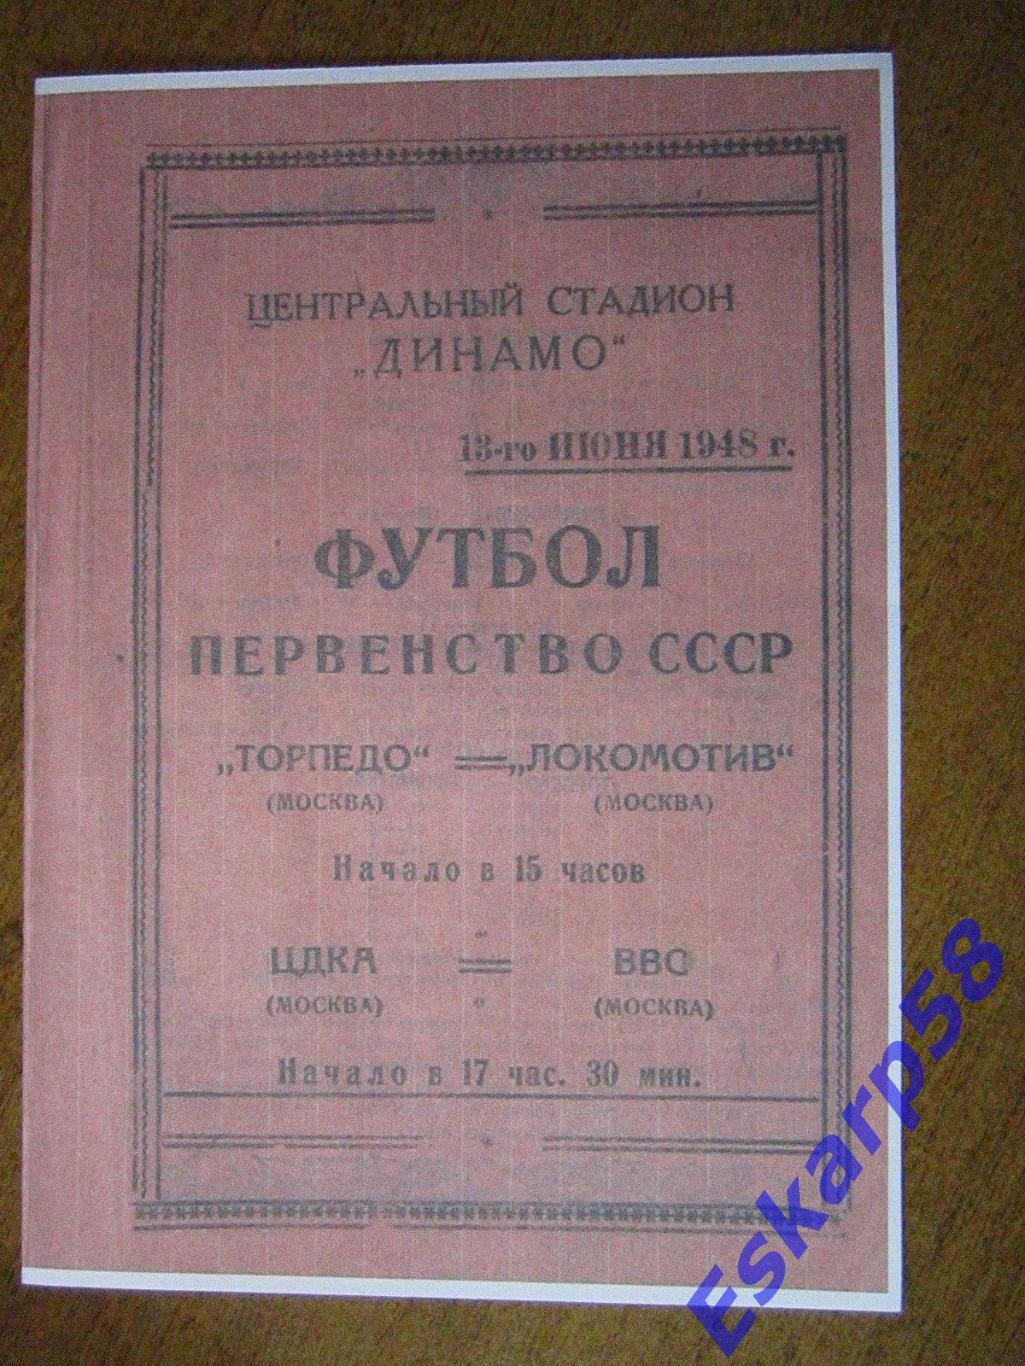 1948. Торпедо-Локомотив + ЦДКА-ВВС.На 2 игры Копия